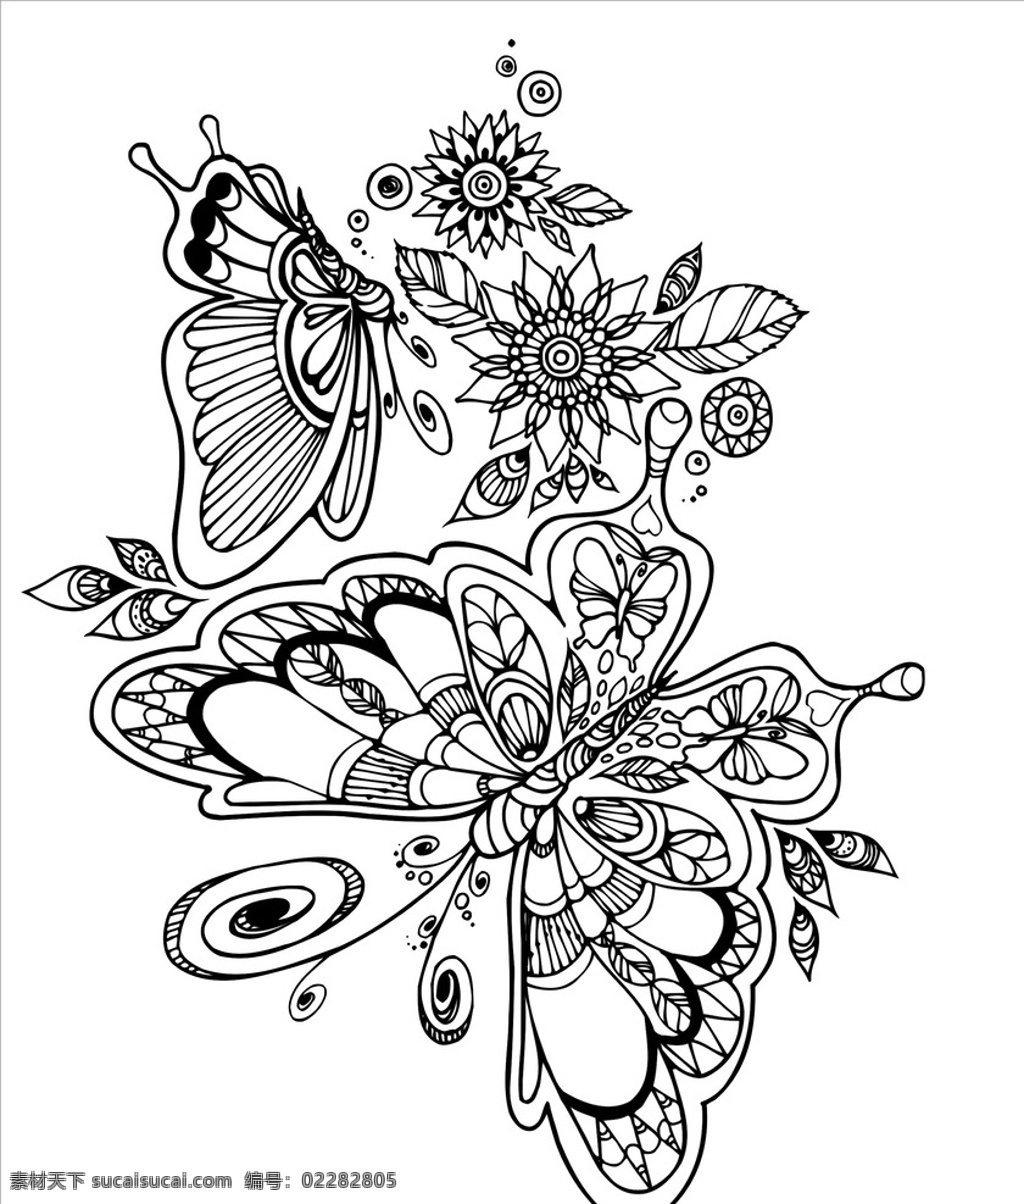 黑白 花朵 蝴蝶 复杂 剪纸 底纹 单色 矢量 植株 底纹边框 黑白花纹样式 背景底纹